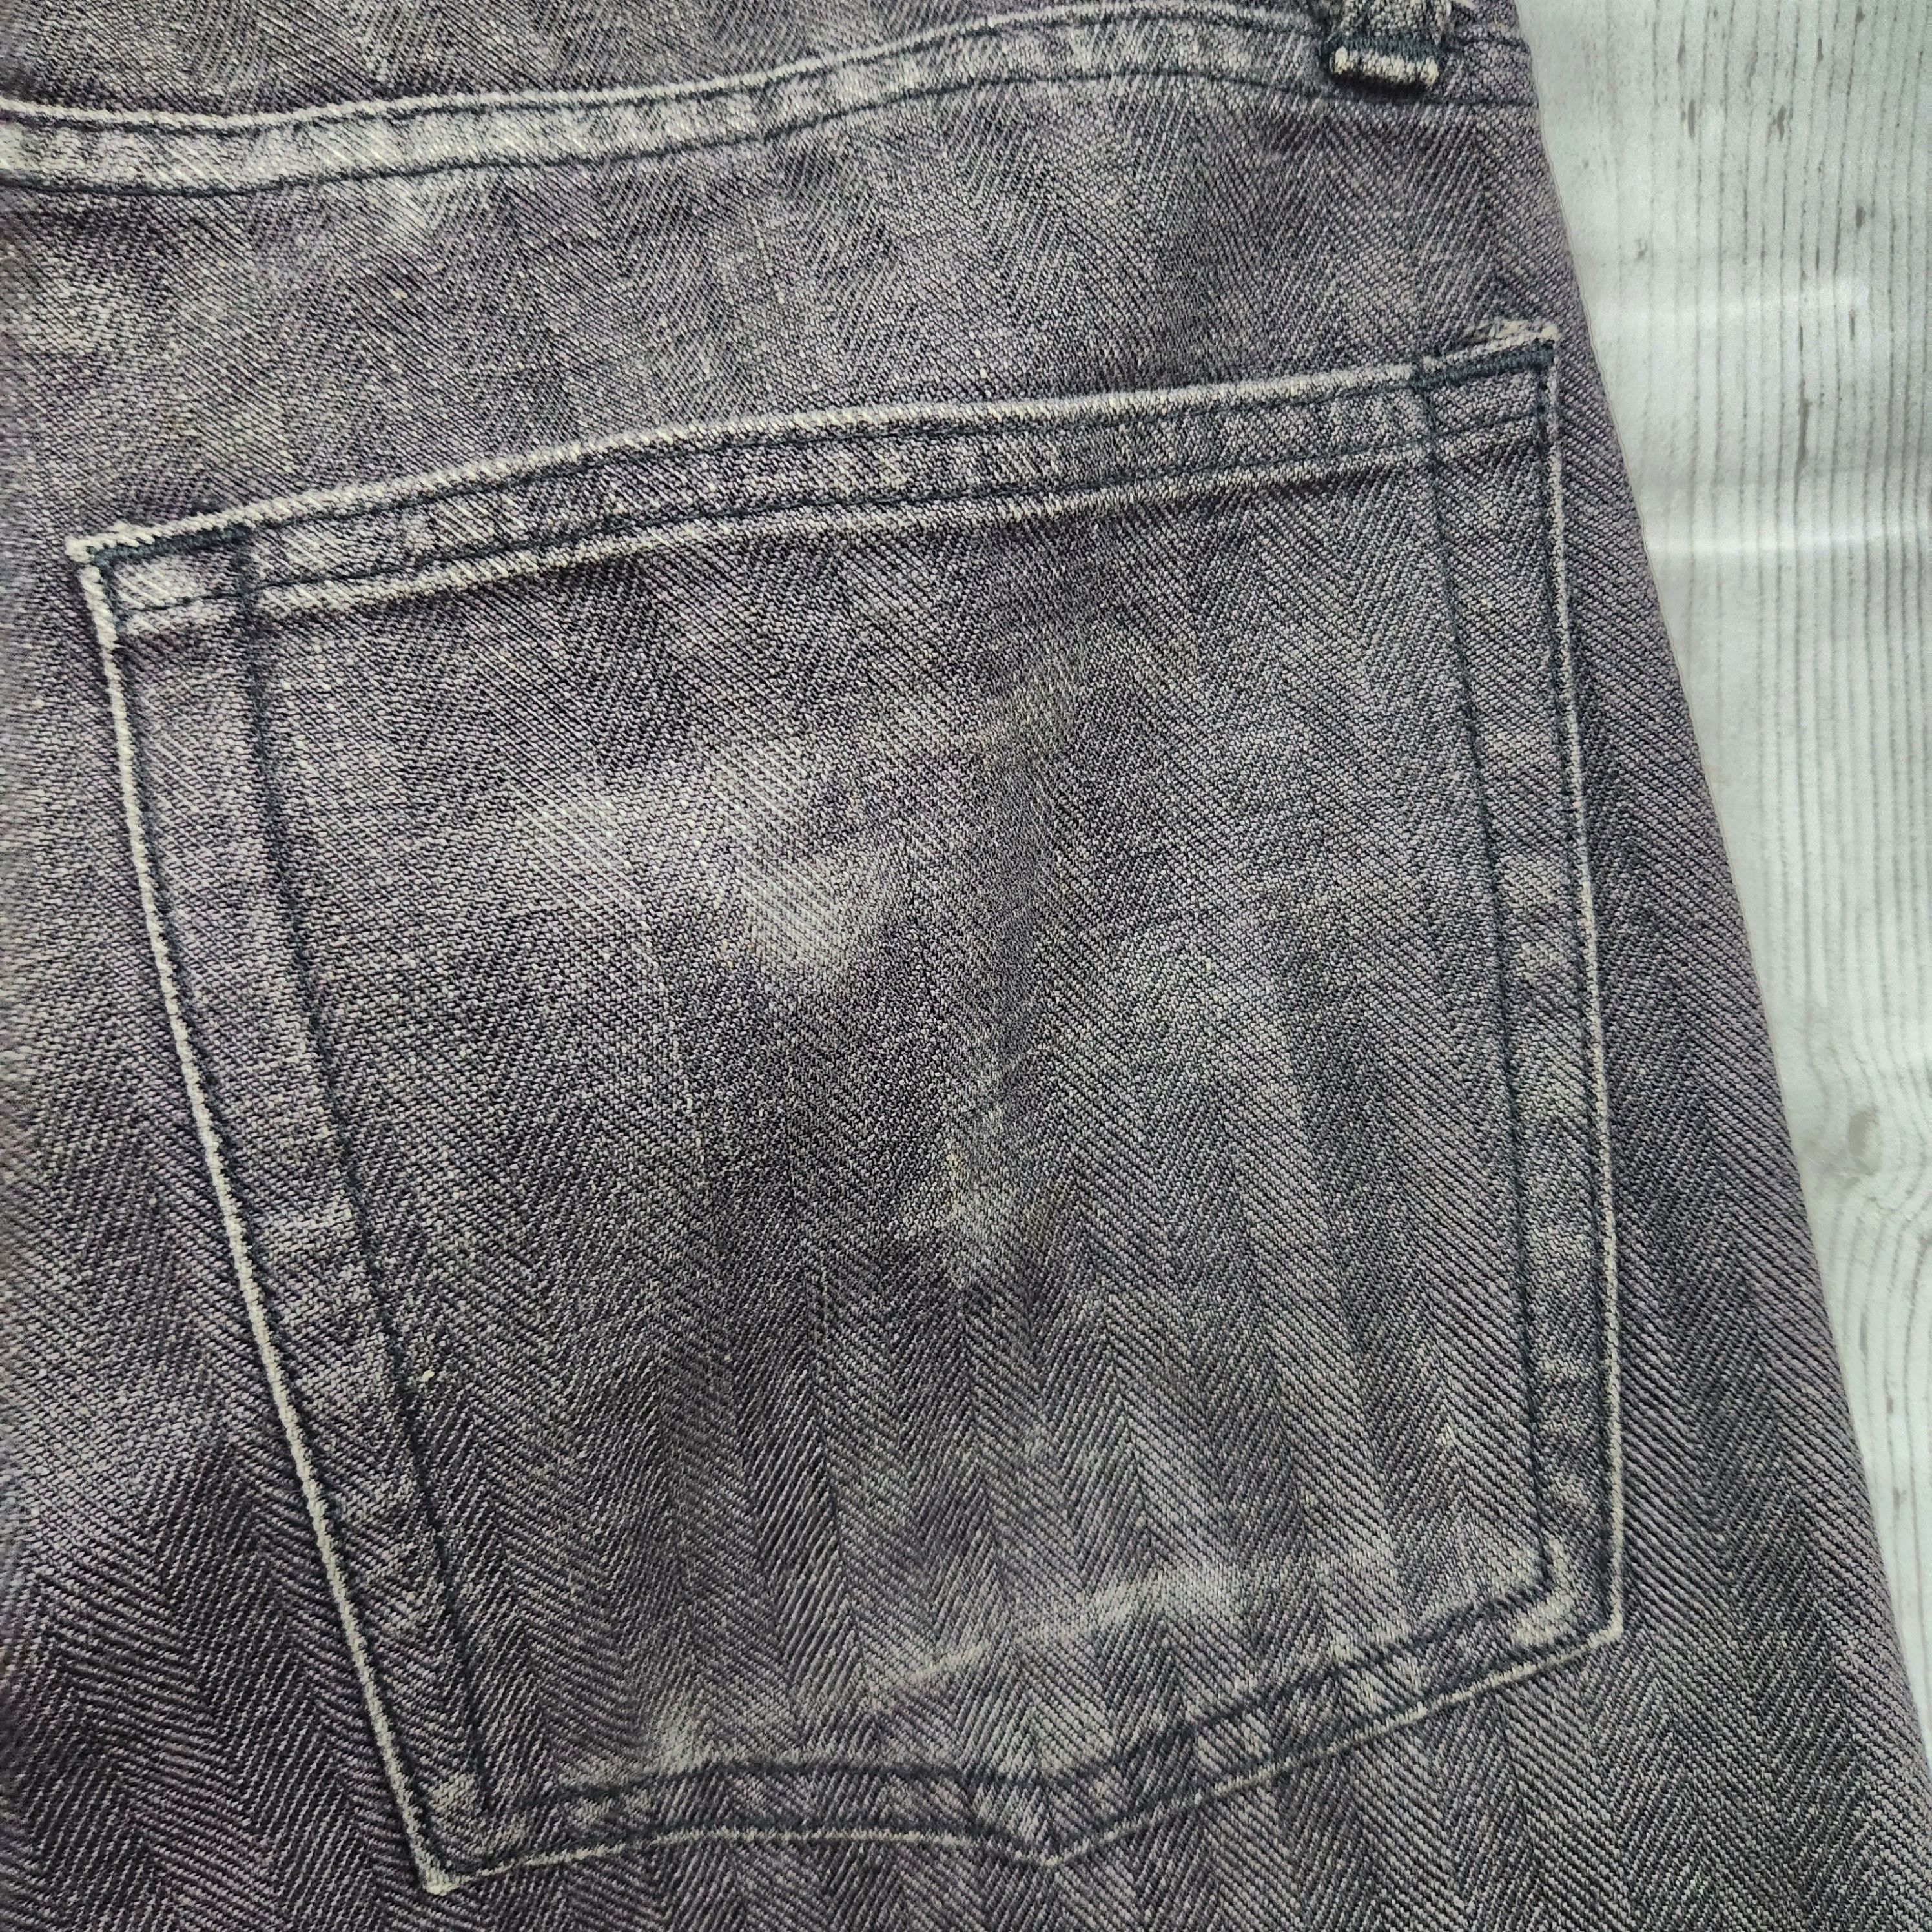 Japanese Brand - Flared Edge Rupert Denim Japan Jeans 70s Style - 13